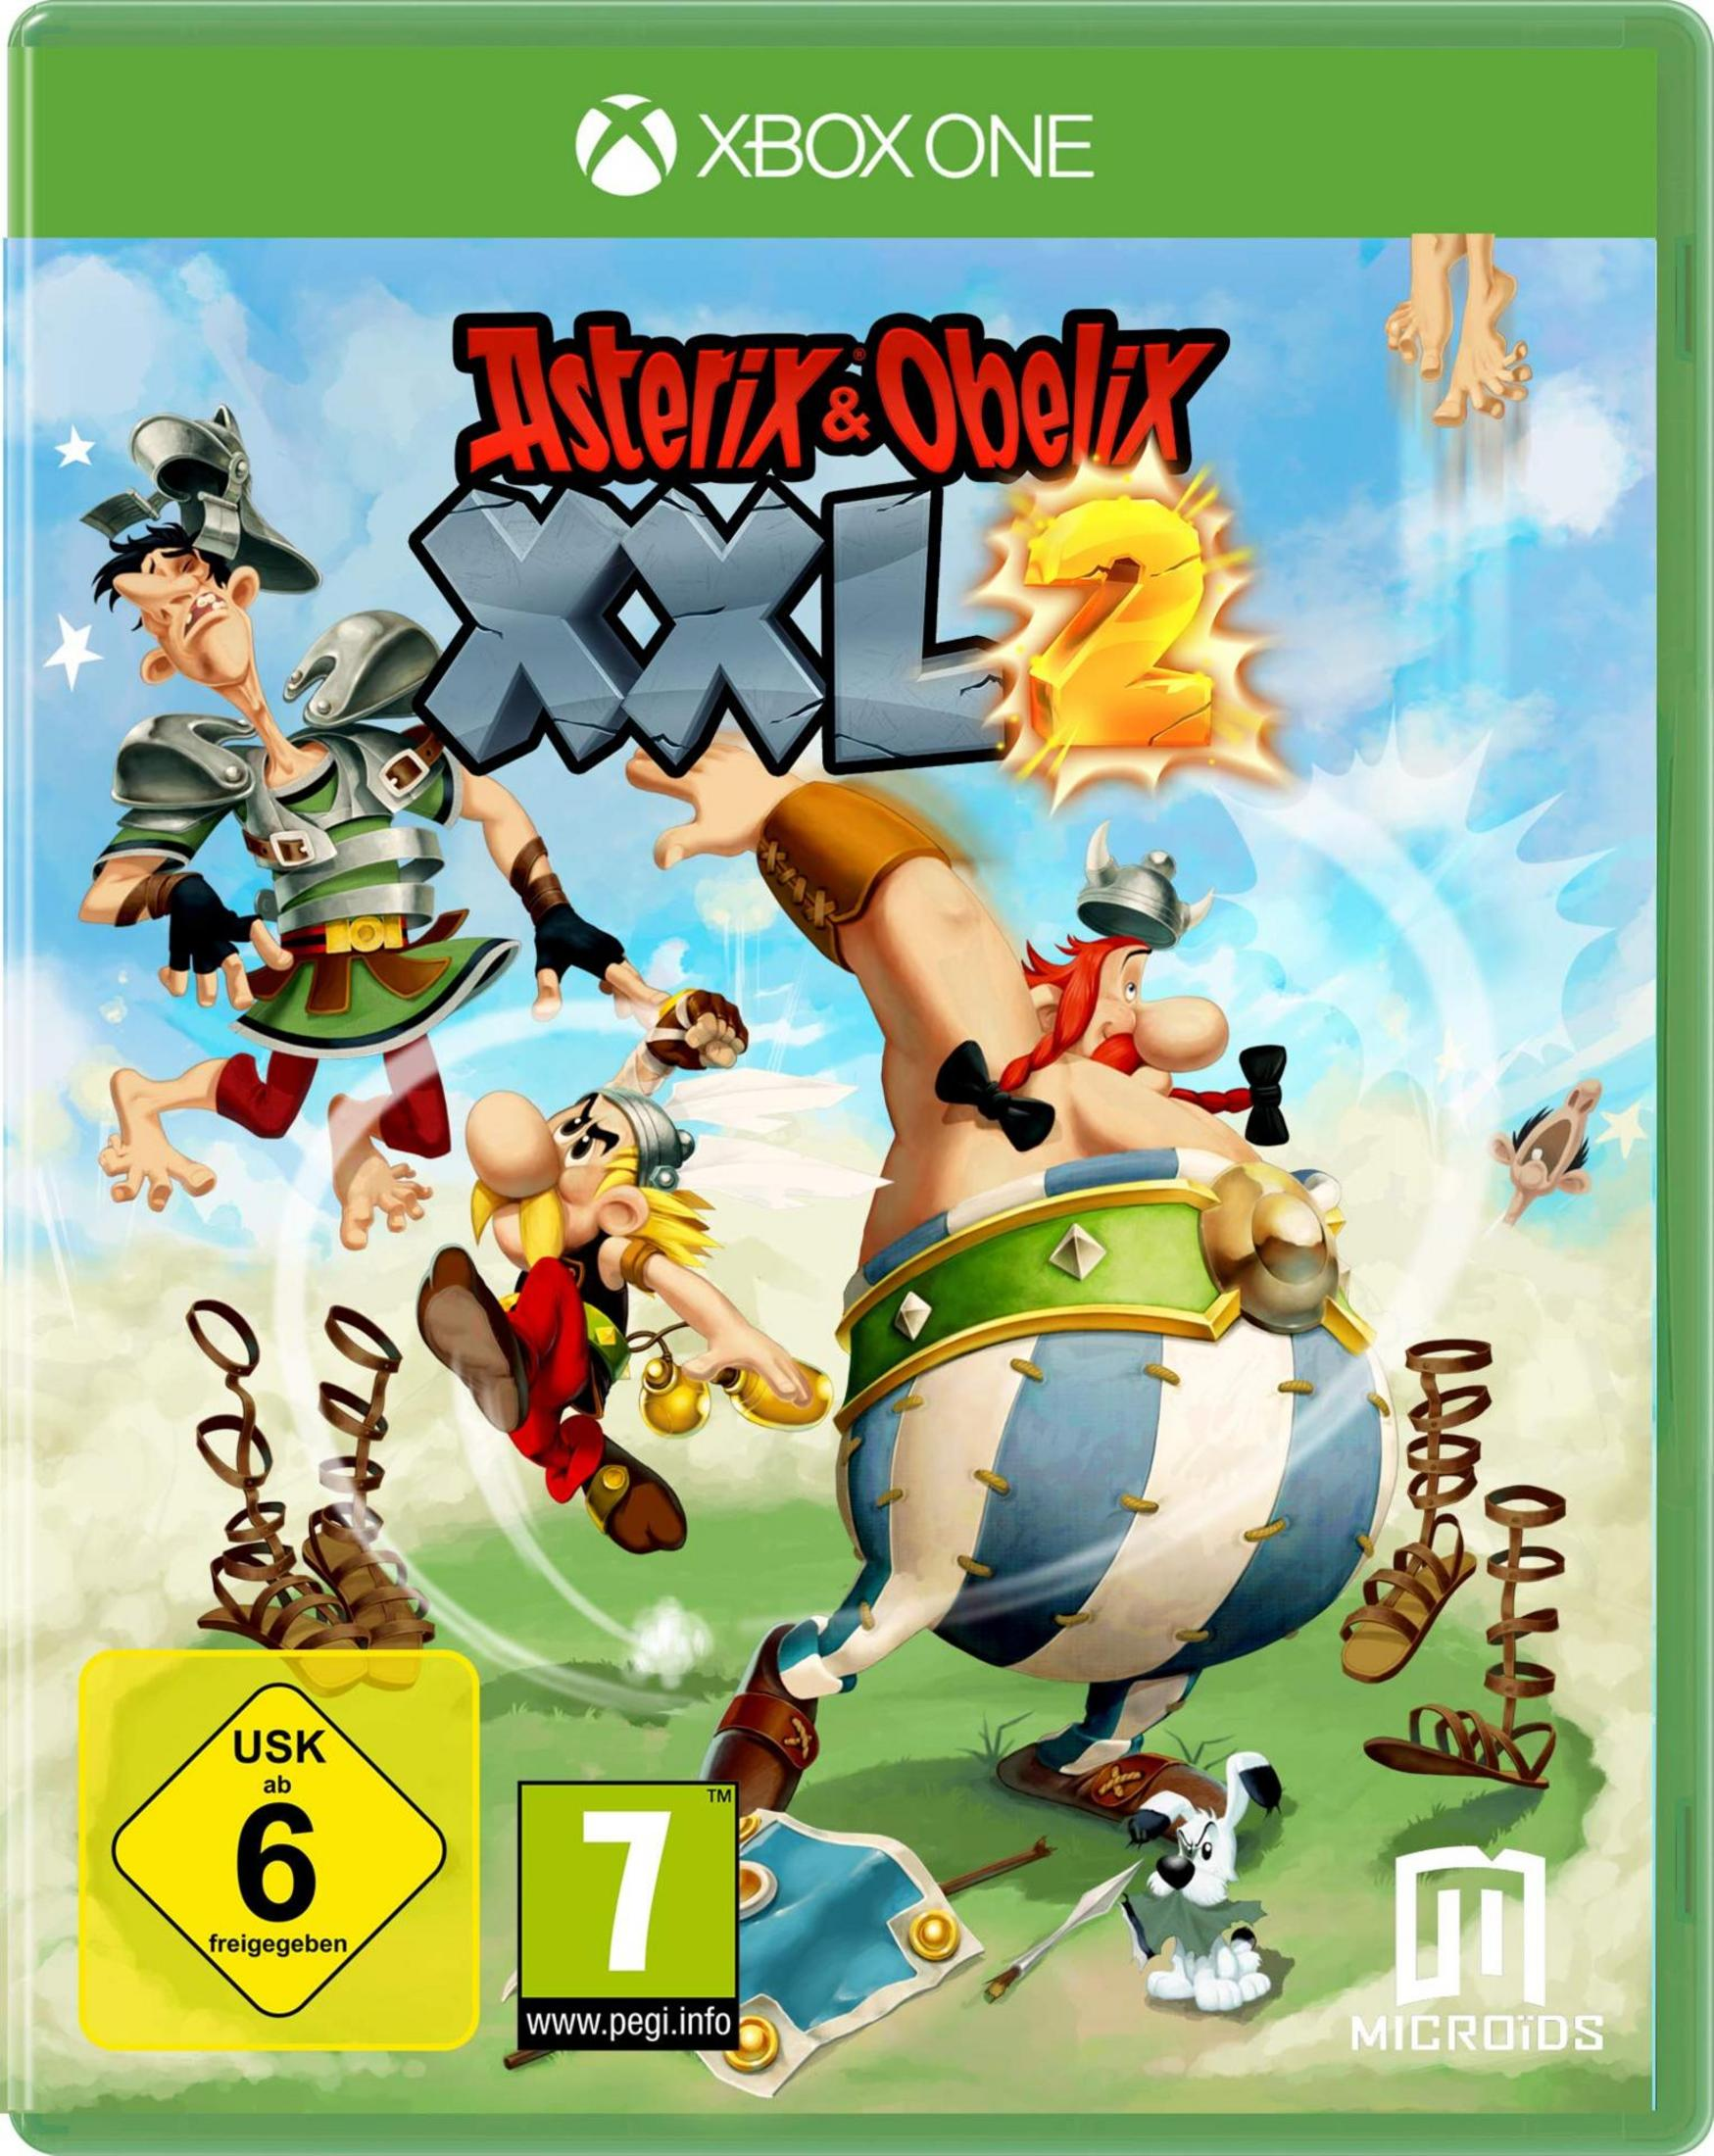 Obelix One Xbox [Xbox - One] & XXL2 Asterix